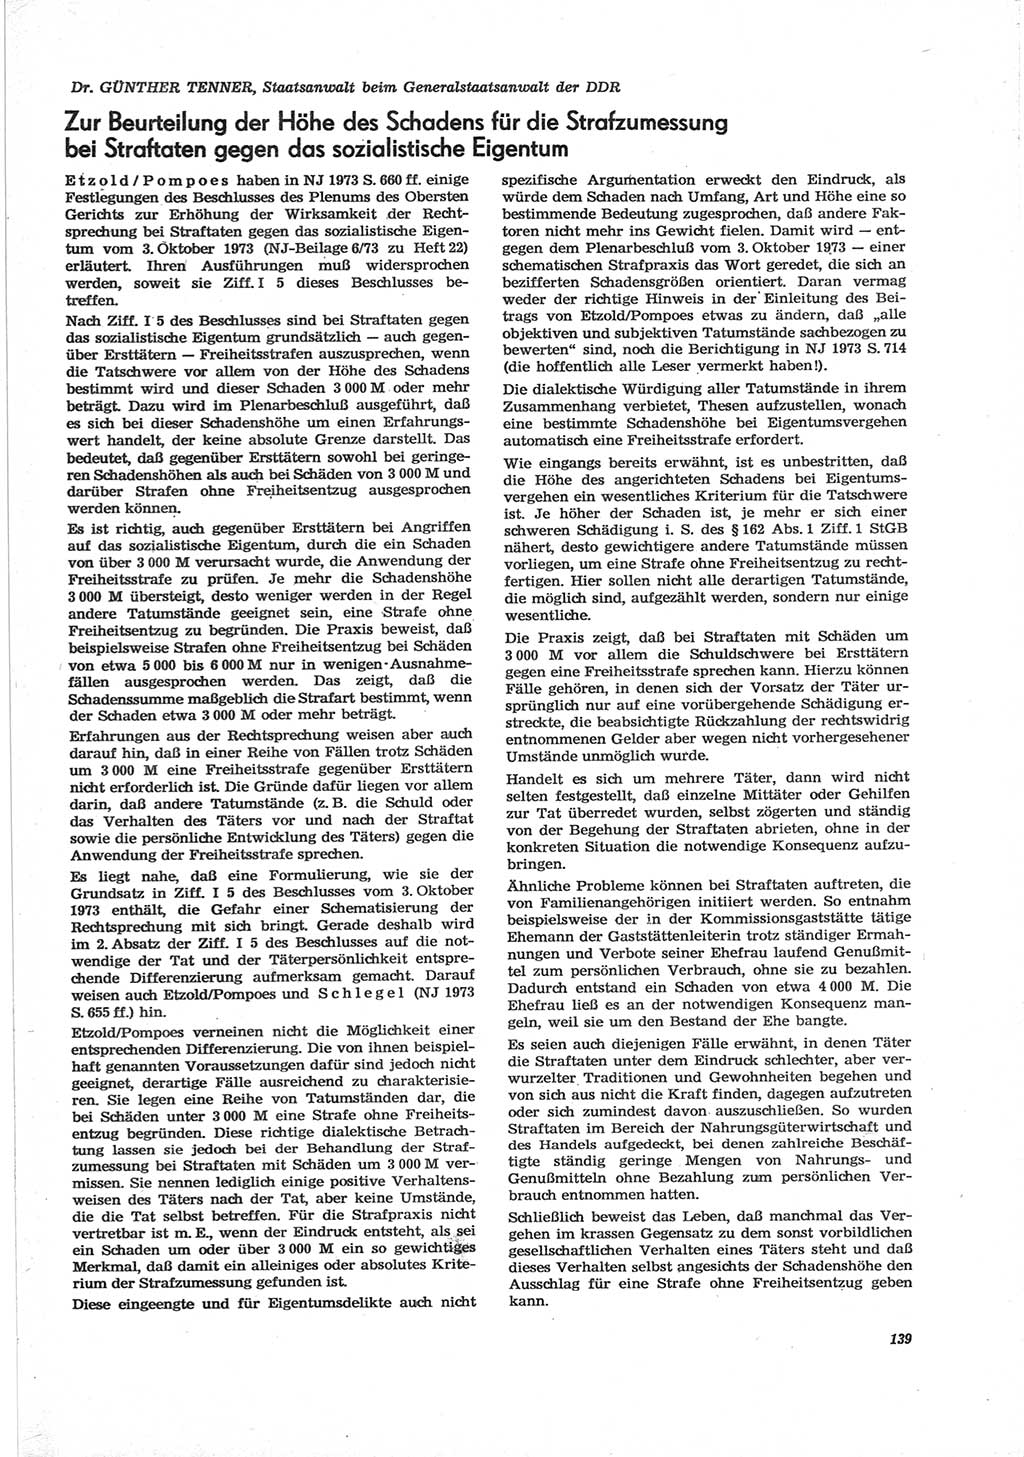 Neue Justiz (NJ), Zeitschrift für Recht und Rechtswissenschaft [Deutsche Demokratische Republik (DDR)], 28. Jahrgang 1974, Seite 139 (NJ DDR 1974, S. 139)